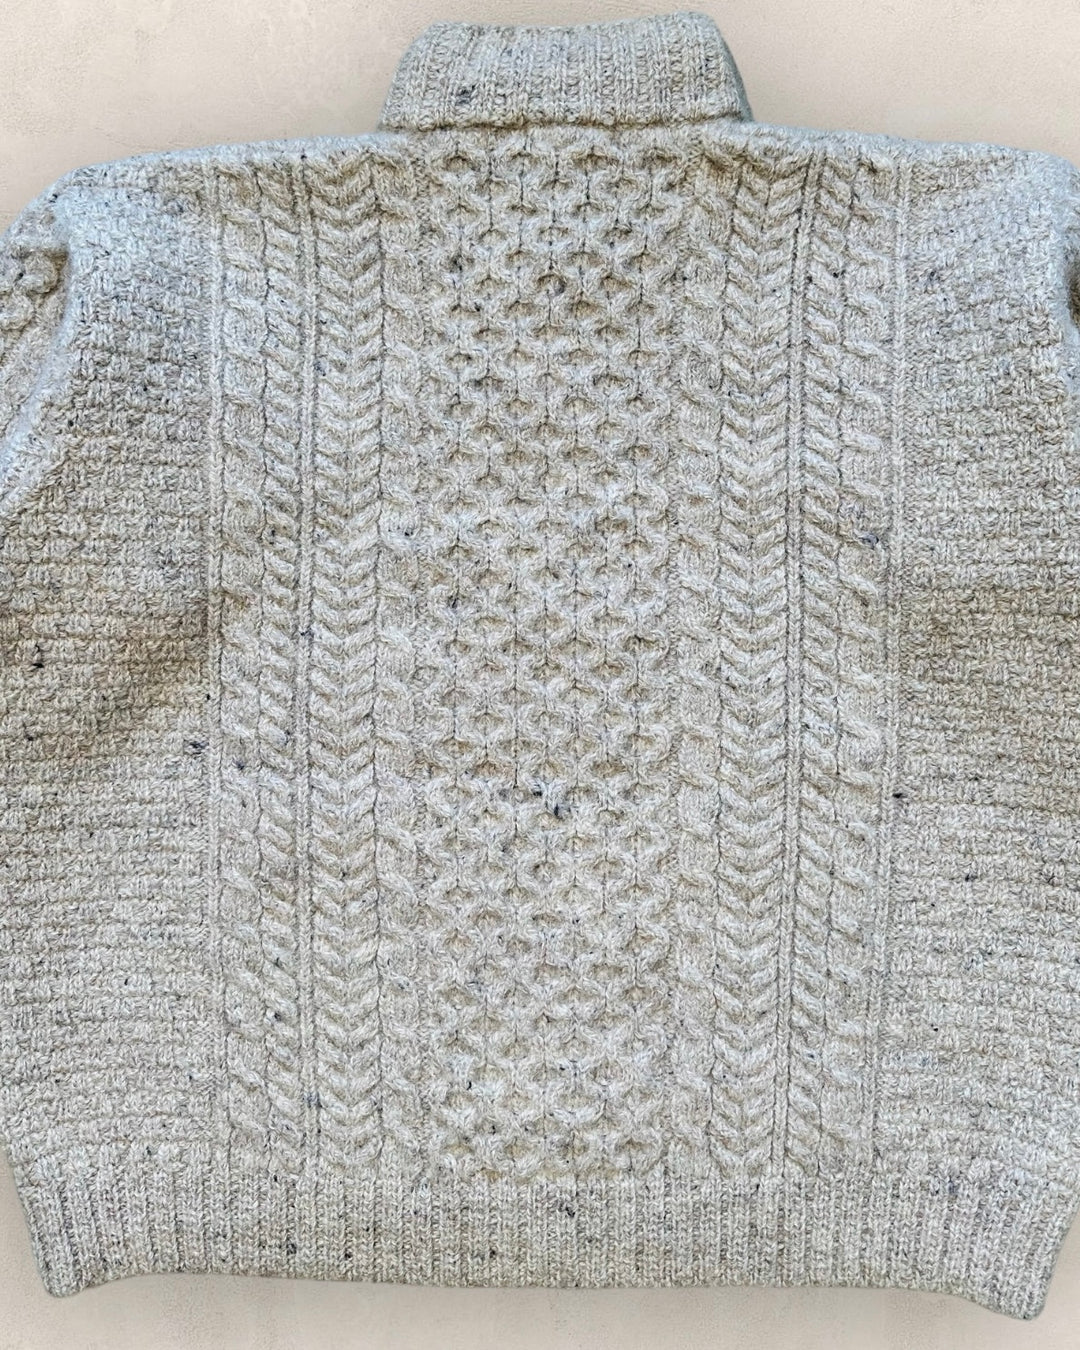 Jersey vintage de lana con cuello abotonado - Talla S/M